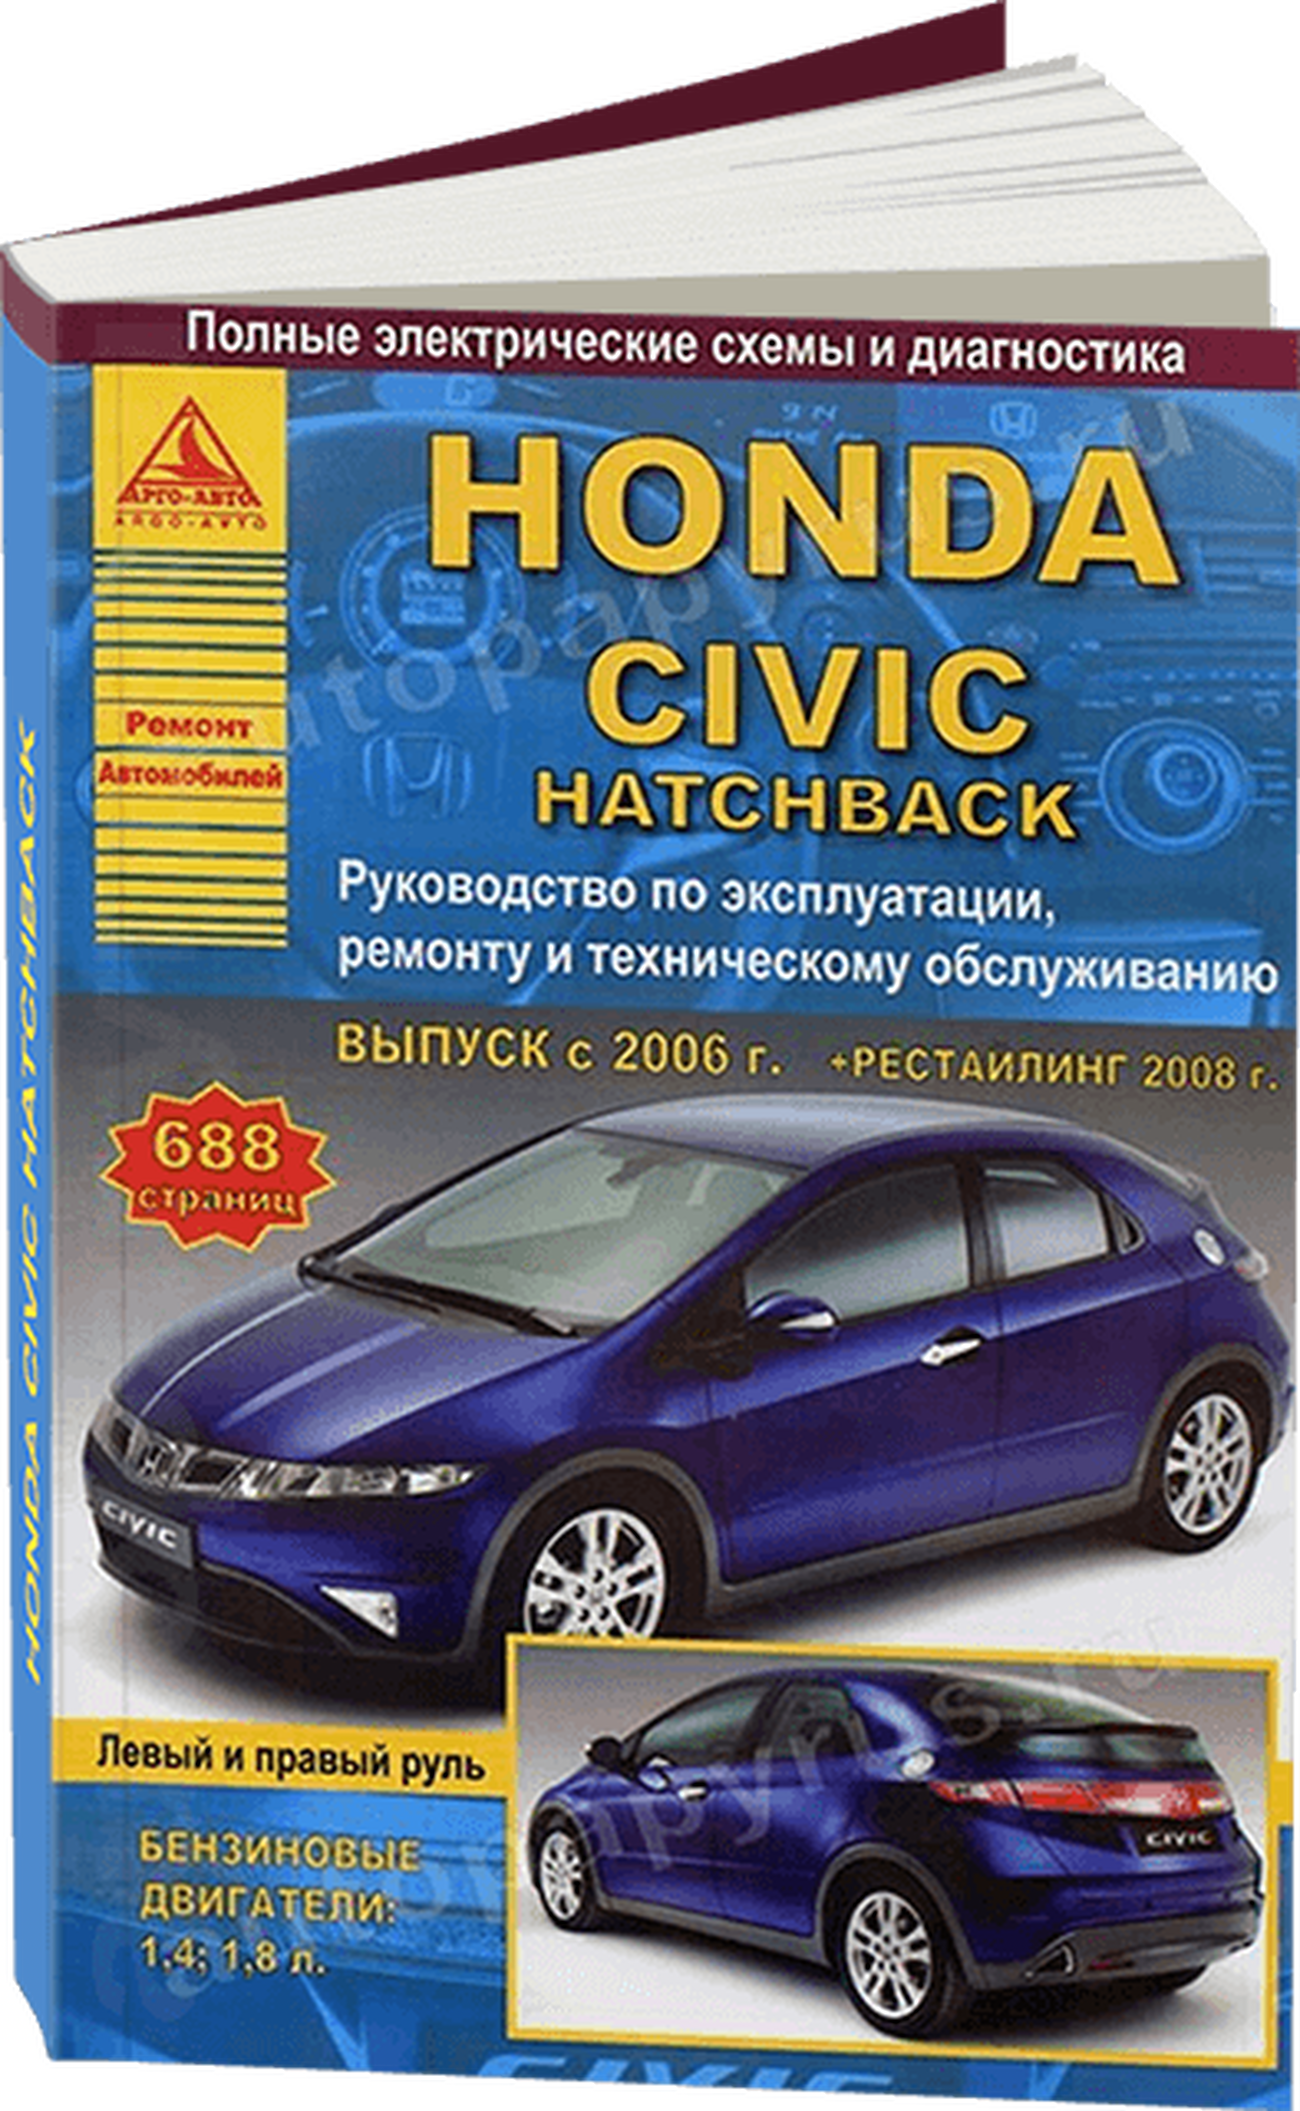 Книга: HONDA CIVIC HATCHBACK (б) с 2006 г.в., + рест. 2008 г., рем., экспл., то | Арго-Авто